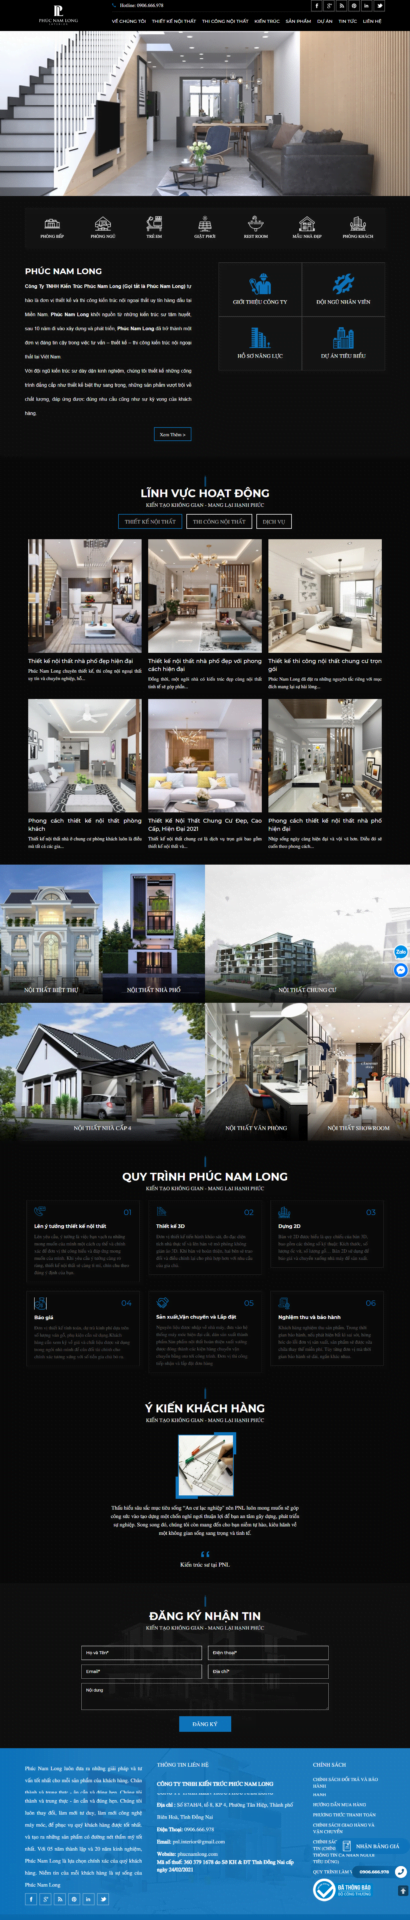 Mẫu giao diện website kiến trúc Phúc Nam Long